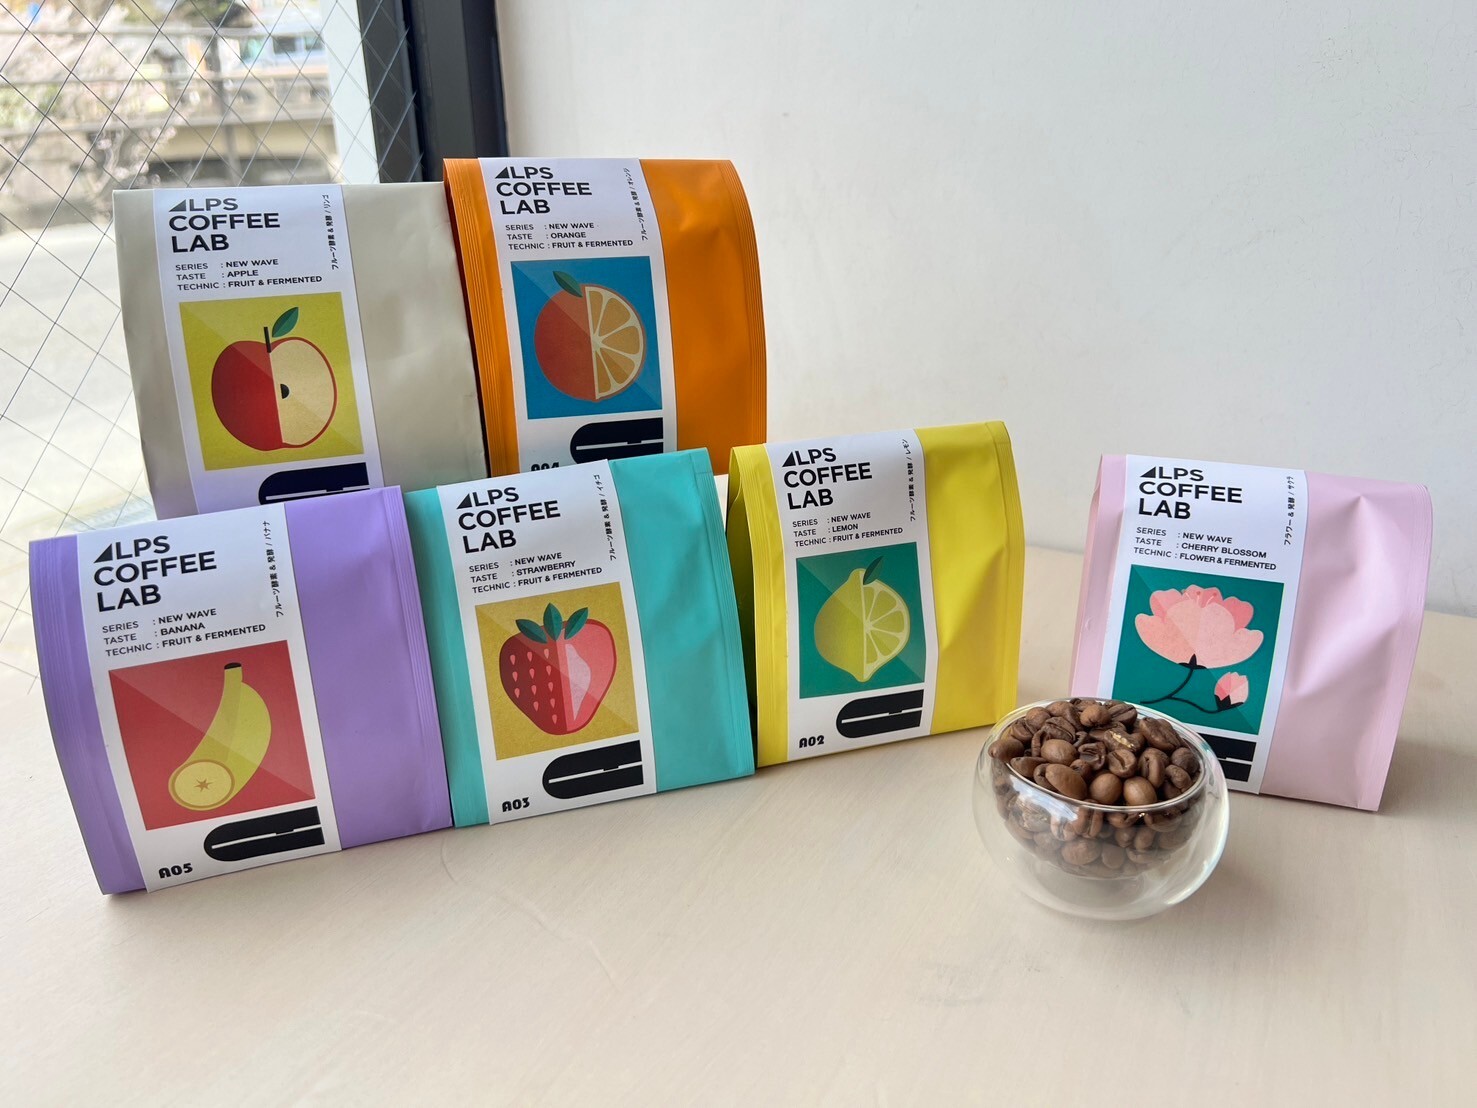 信州・松本発のアルプスコーヒーラボ、
果物でグリーンビーンズを再発酵して風味を作り上げる
コーヒー豆『イチゴコーヒー』など4月15日(月)より新発売！